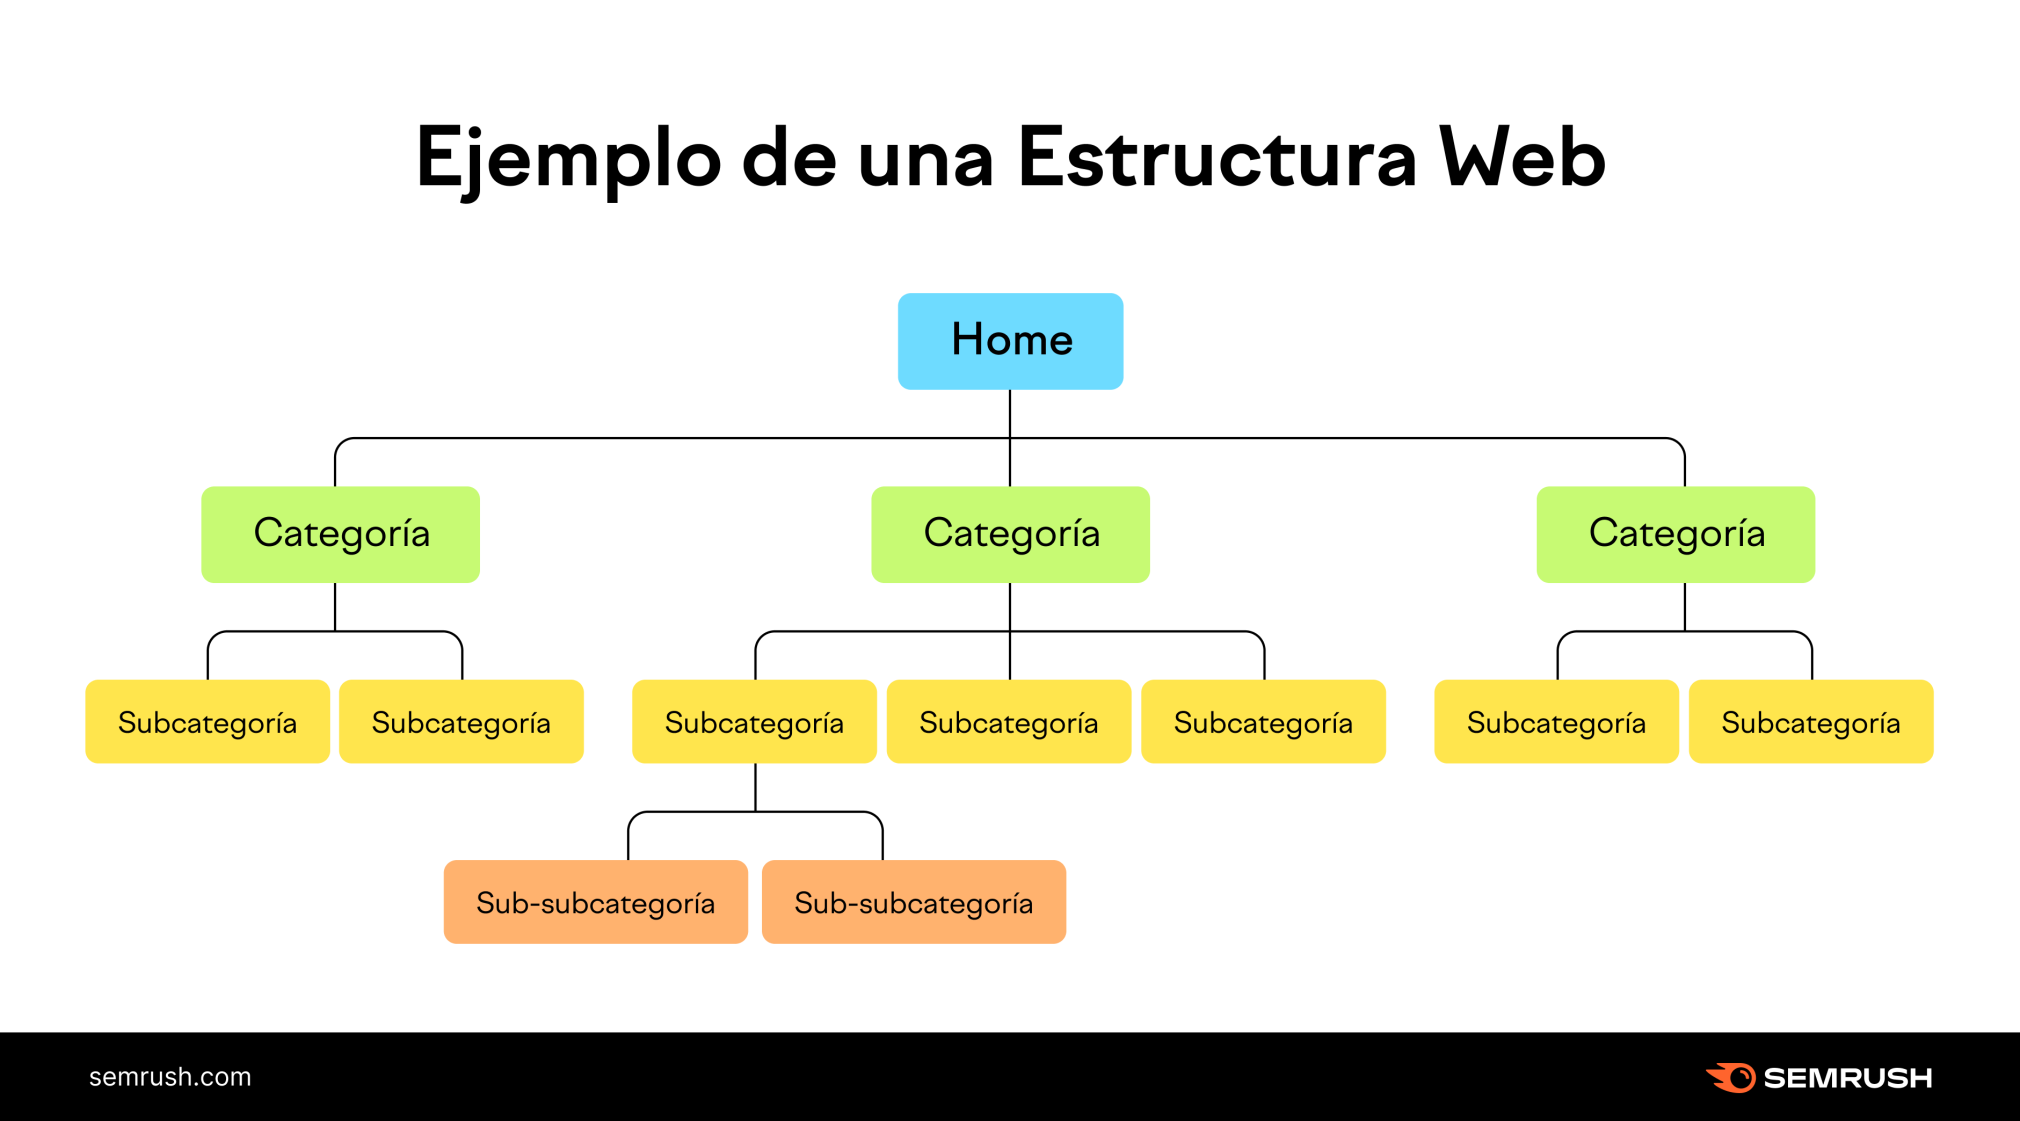 Infografía de Semrush con un ejemplo de estructura web